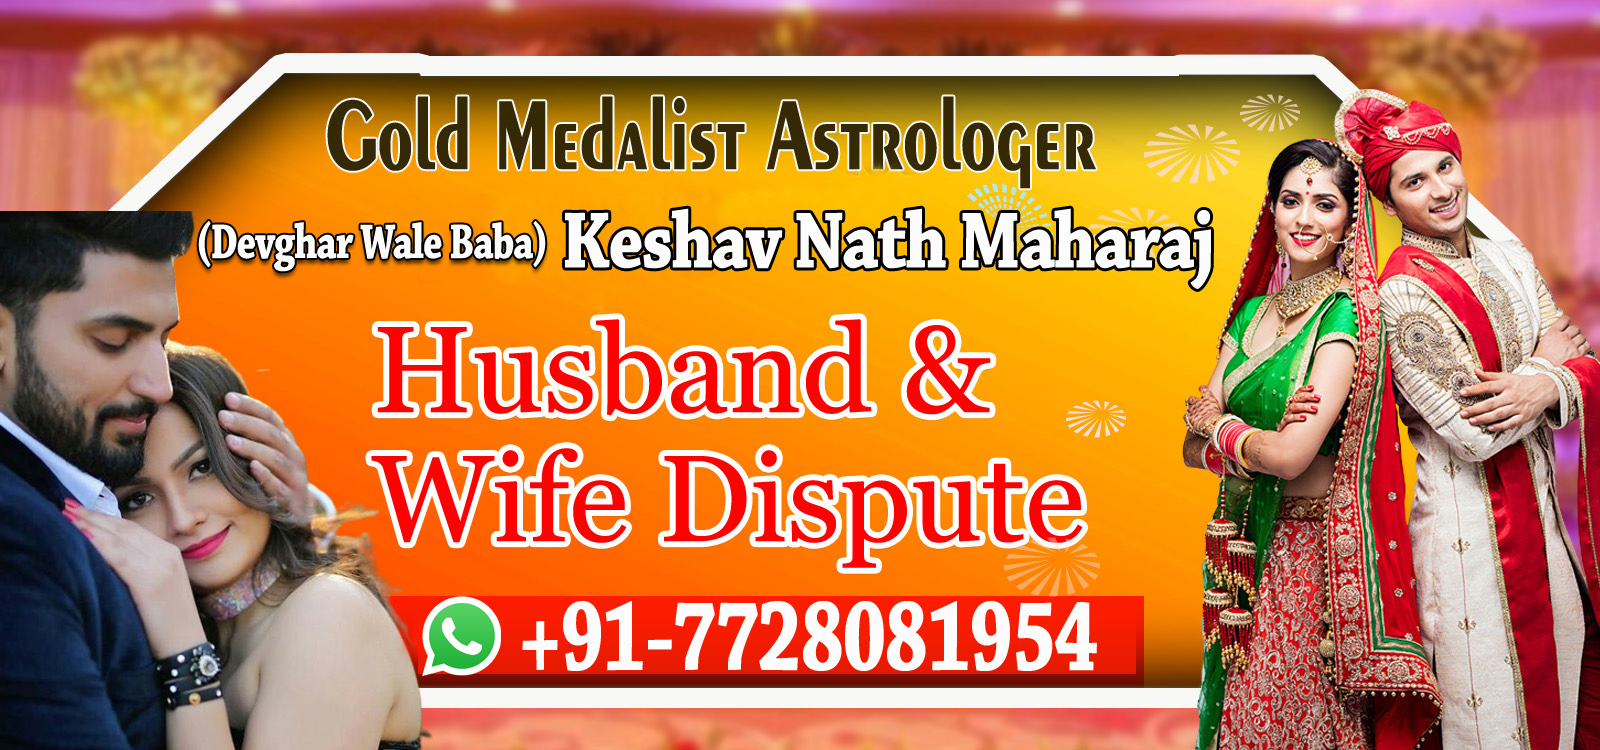 World Famous Astrologer Keshav Nath Maharaj +91-7728081954